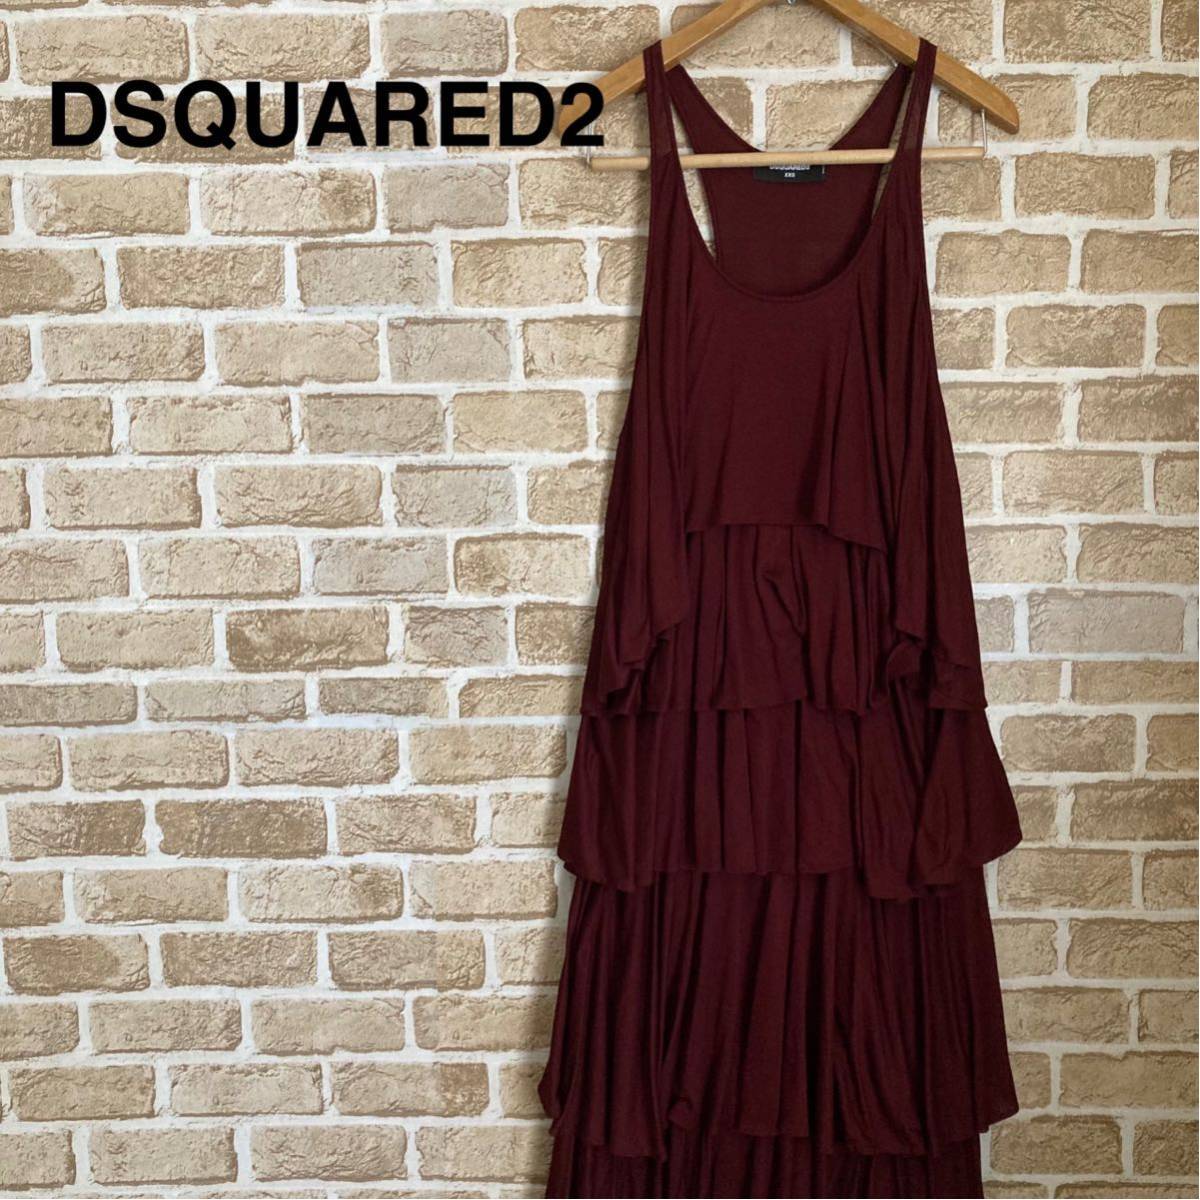 DSQUARED2 ディースクエアード ドレス ティアード ワンピース 新品 フリル ギャザー ノースリーブ イベント パーティー 